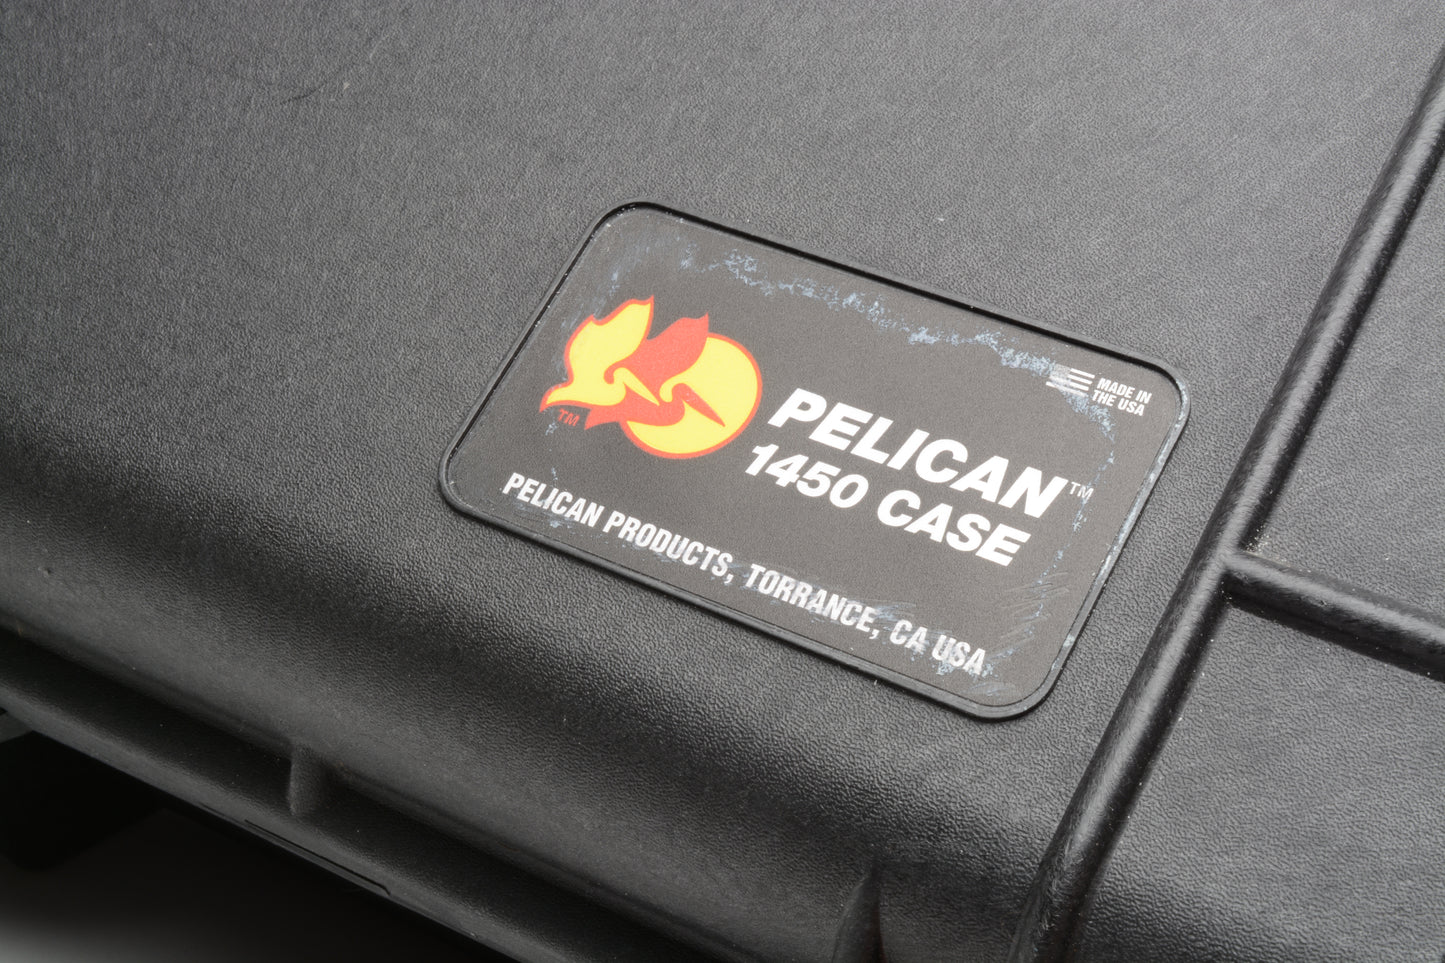 Pelican 1450 (Black) hard case, new foam, very clean, light external marks